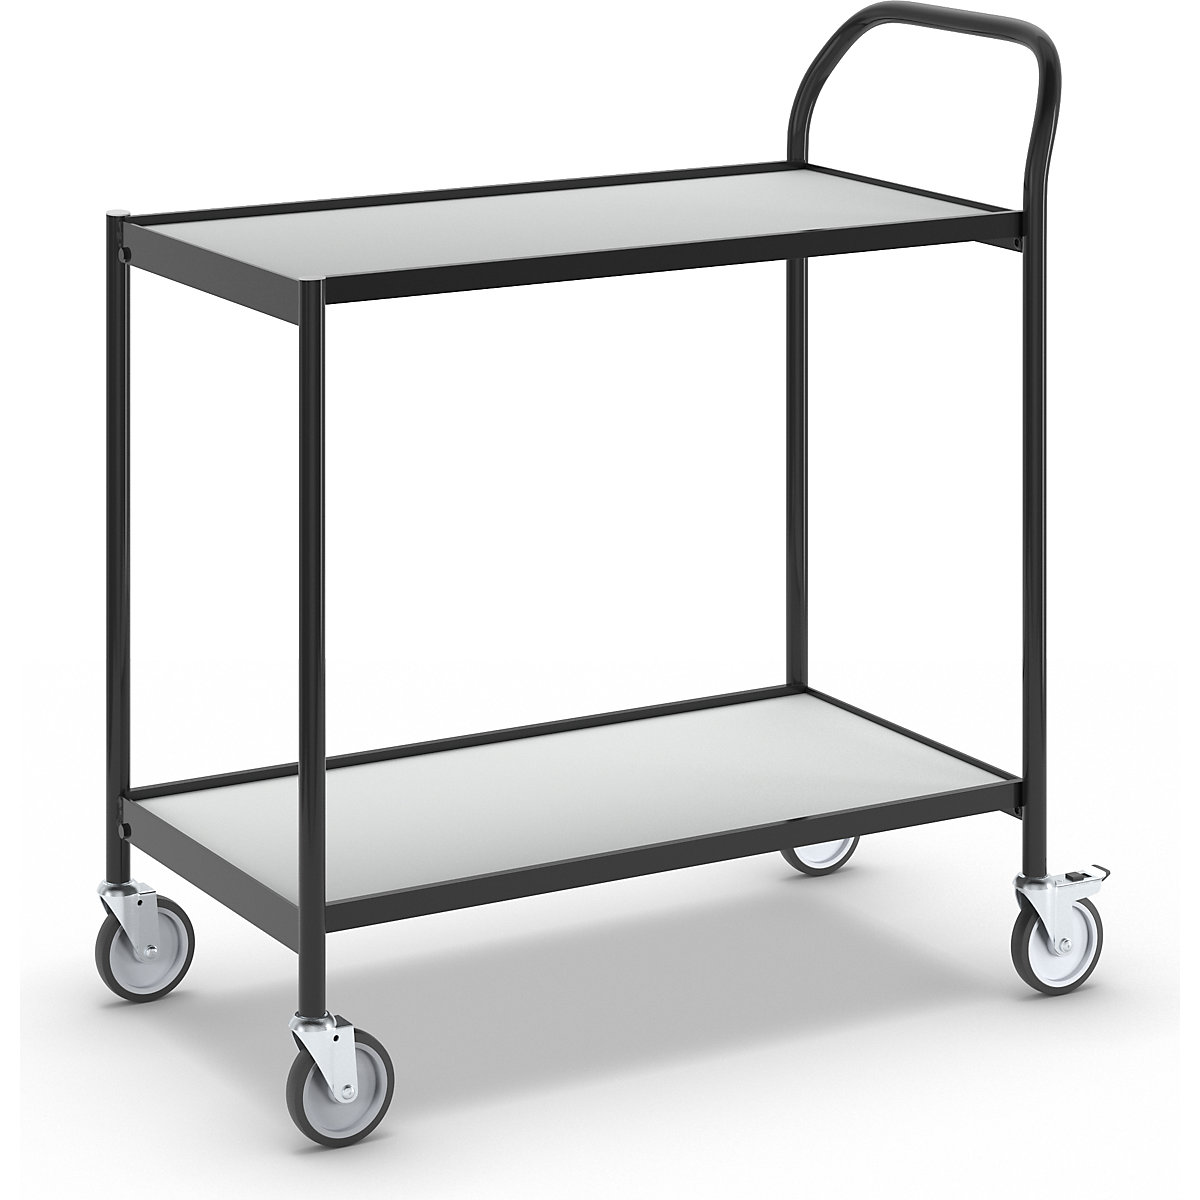 Stolový vozík – HelgeNyberg, 2 etáže, d x š 800 x 420 mm, černá / šedá-2